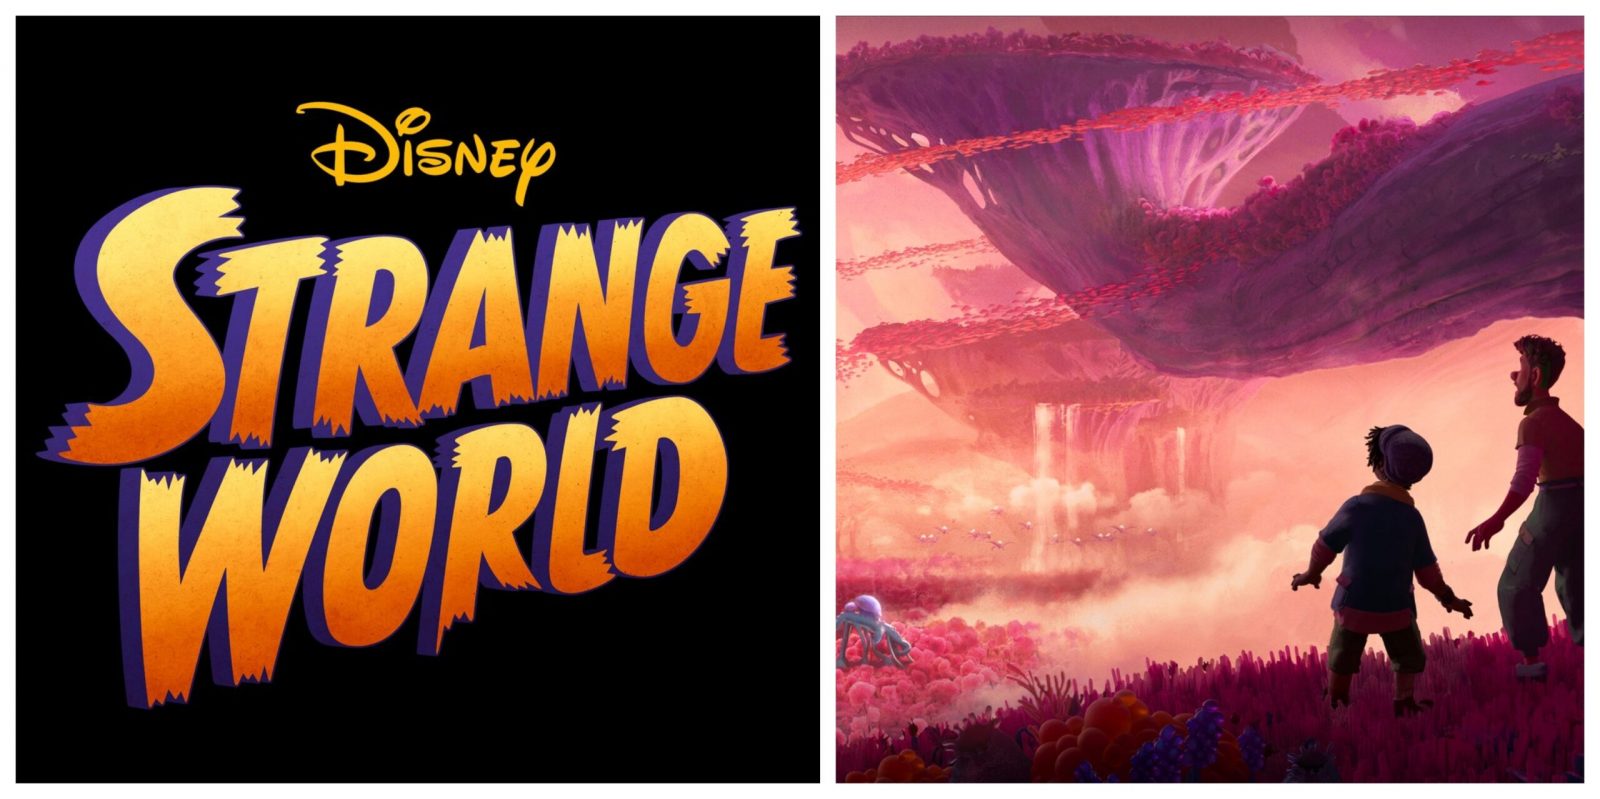 Strange World - Disney Concept art